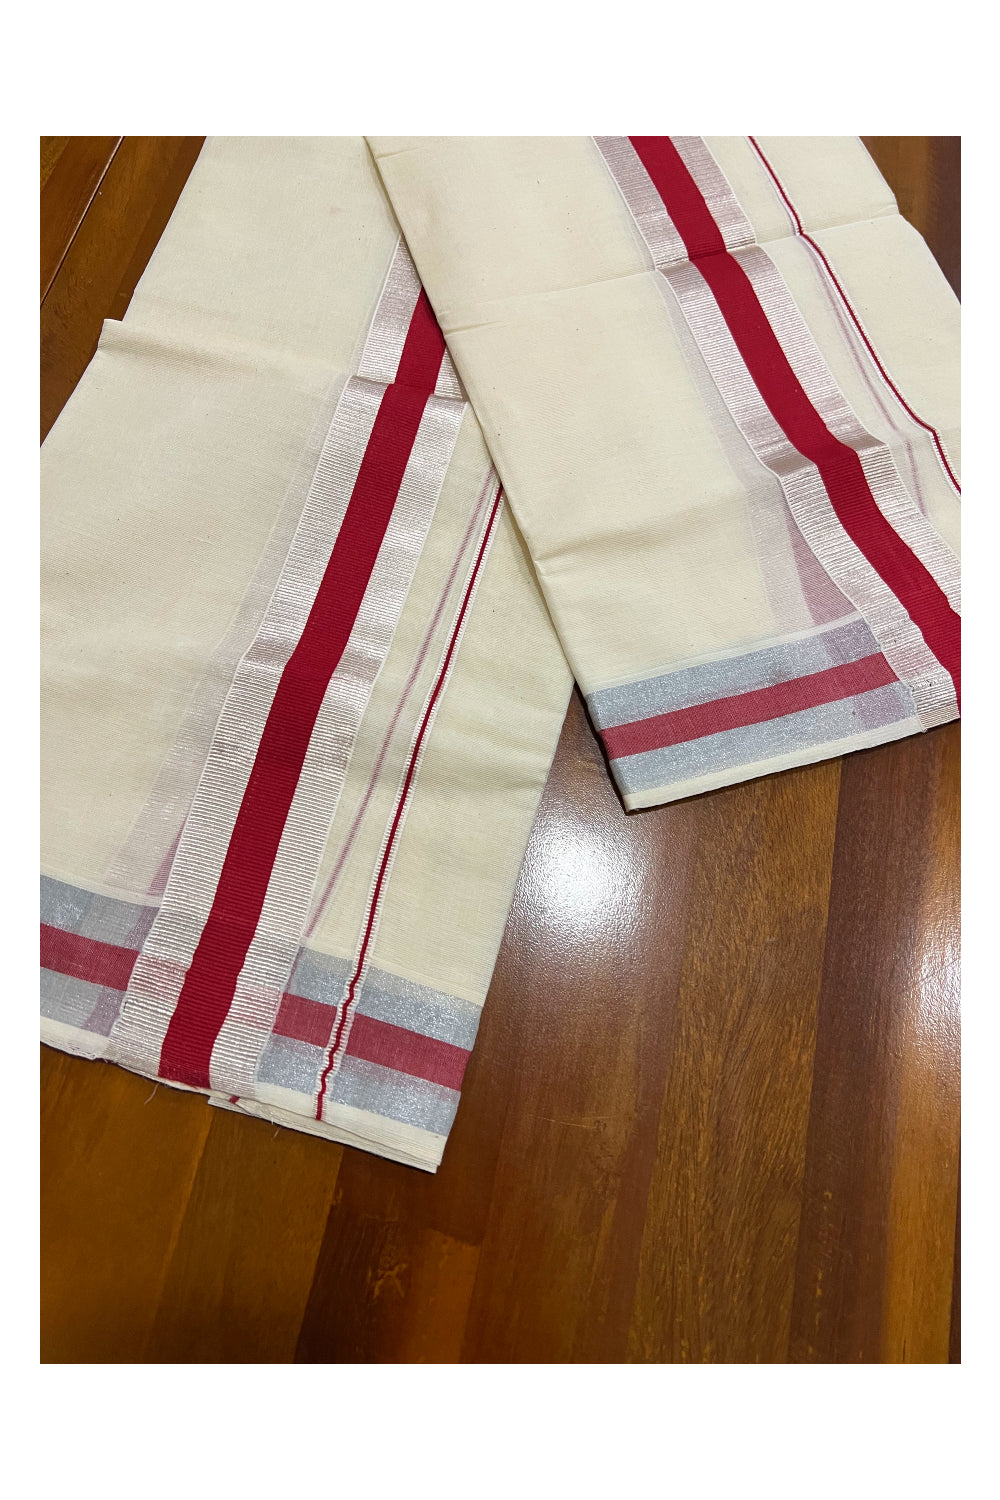 Kerala Cotton Mundum Neriyathum Single (Set Mundu) with Red and Silver Kasavu Border 2.80 Mtrs